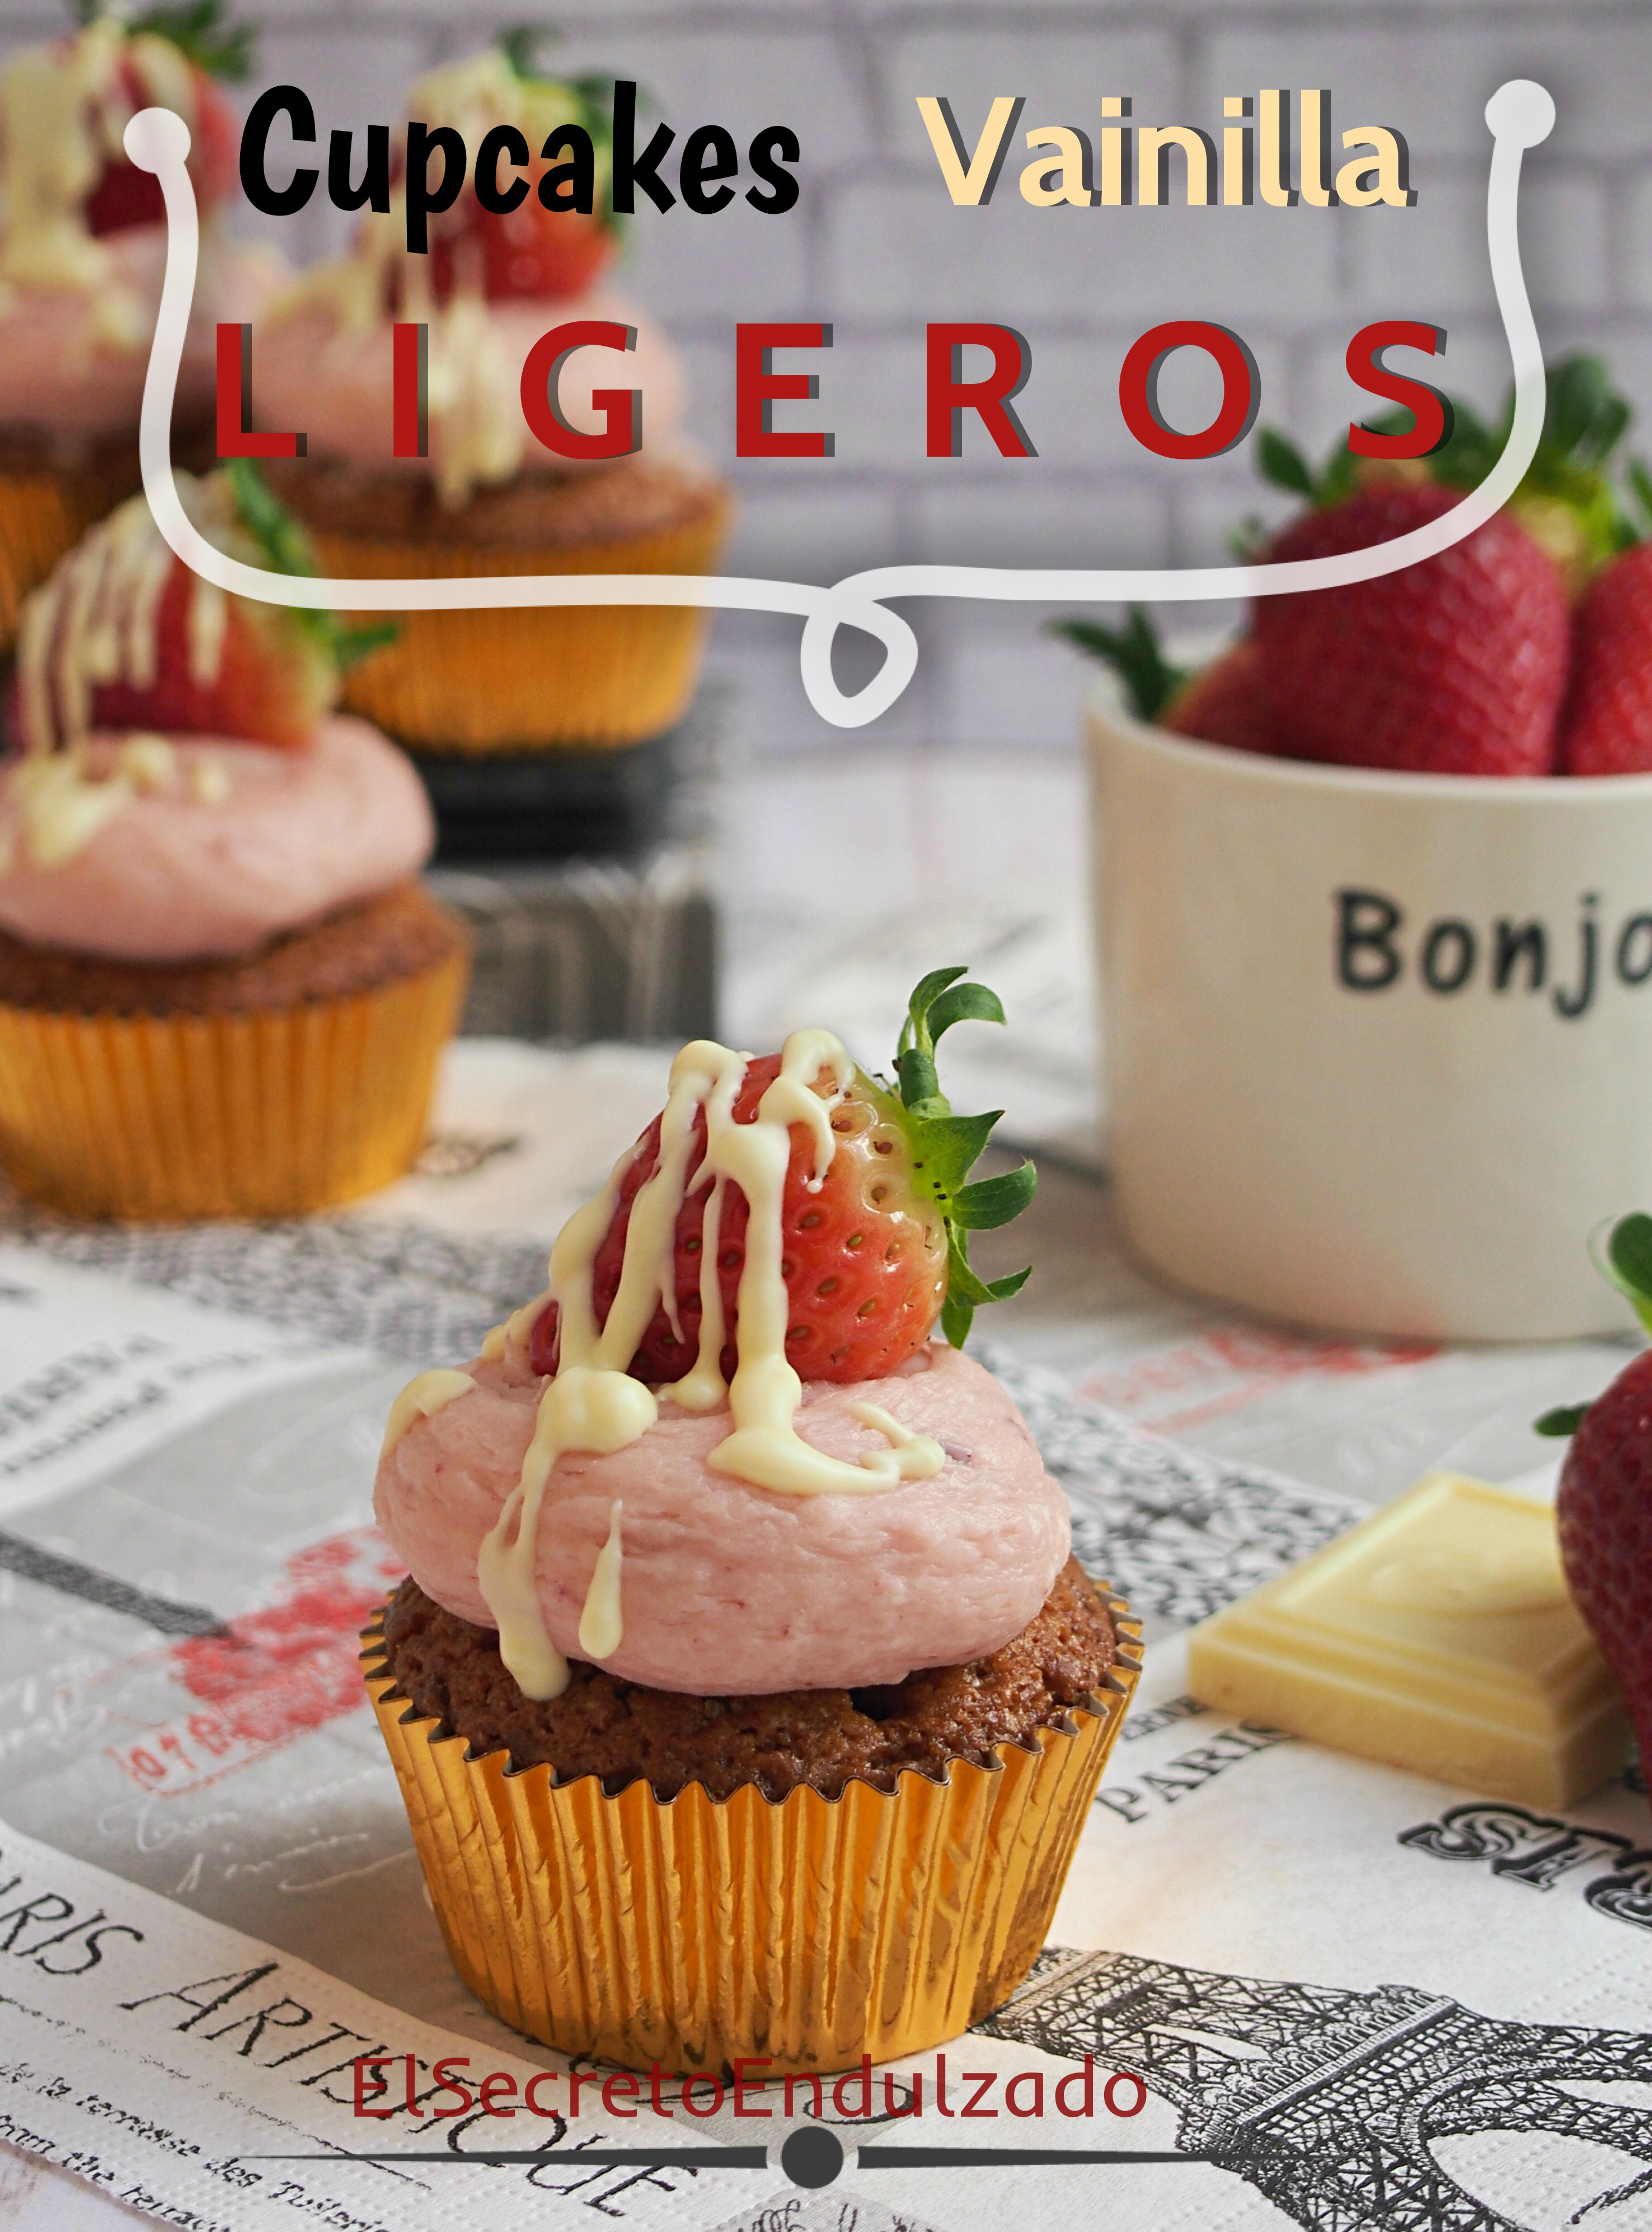 Cupcakes de Vainilla LIGEROS (sin huevo)!! | El Secreto Endulzado